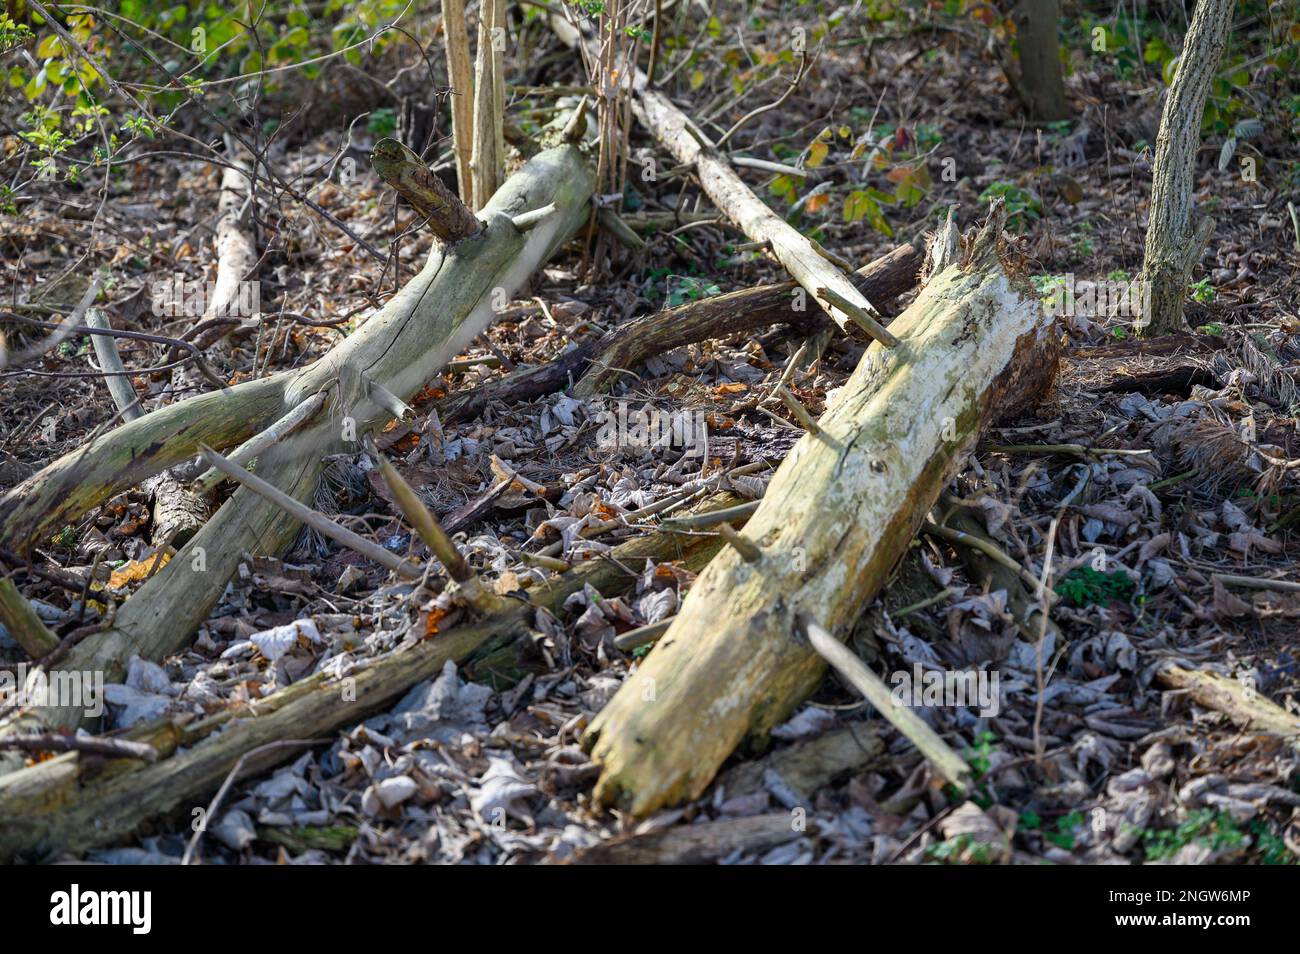 Caída y corte tronco de árbol y ramas en el suelo del bosque para permitir que se convierta en un hábitat para insectos e invertebrados. Foto de stock